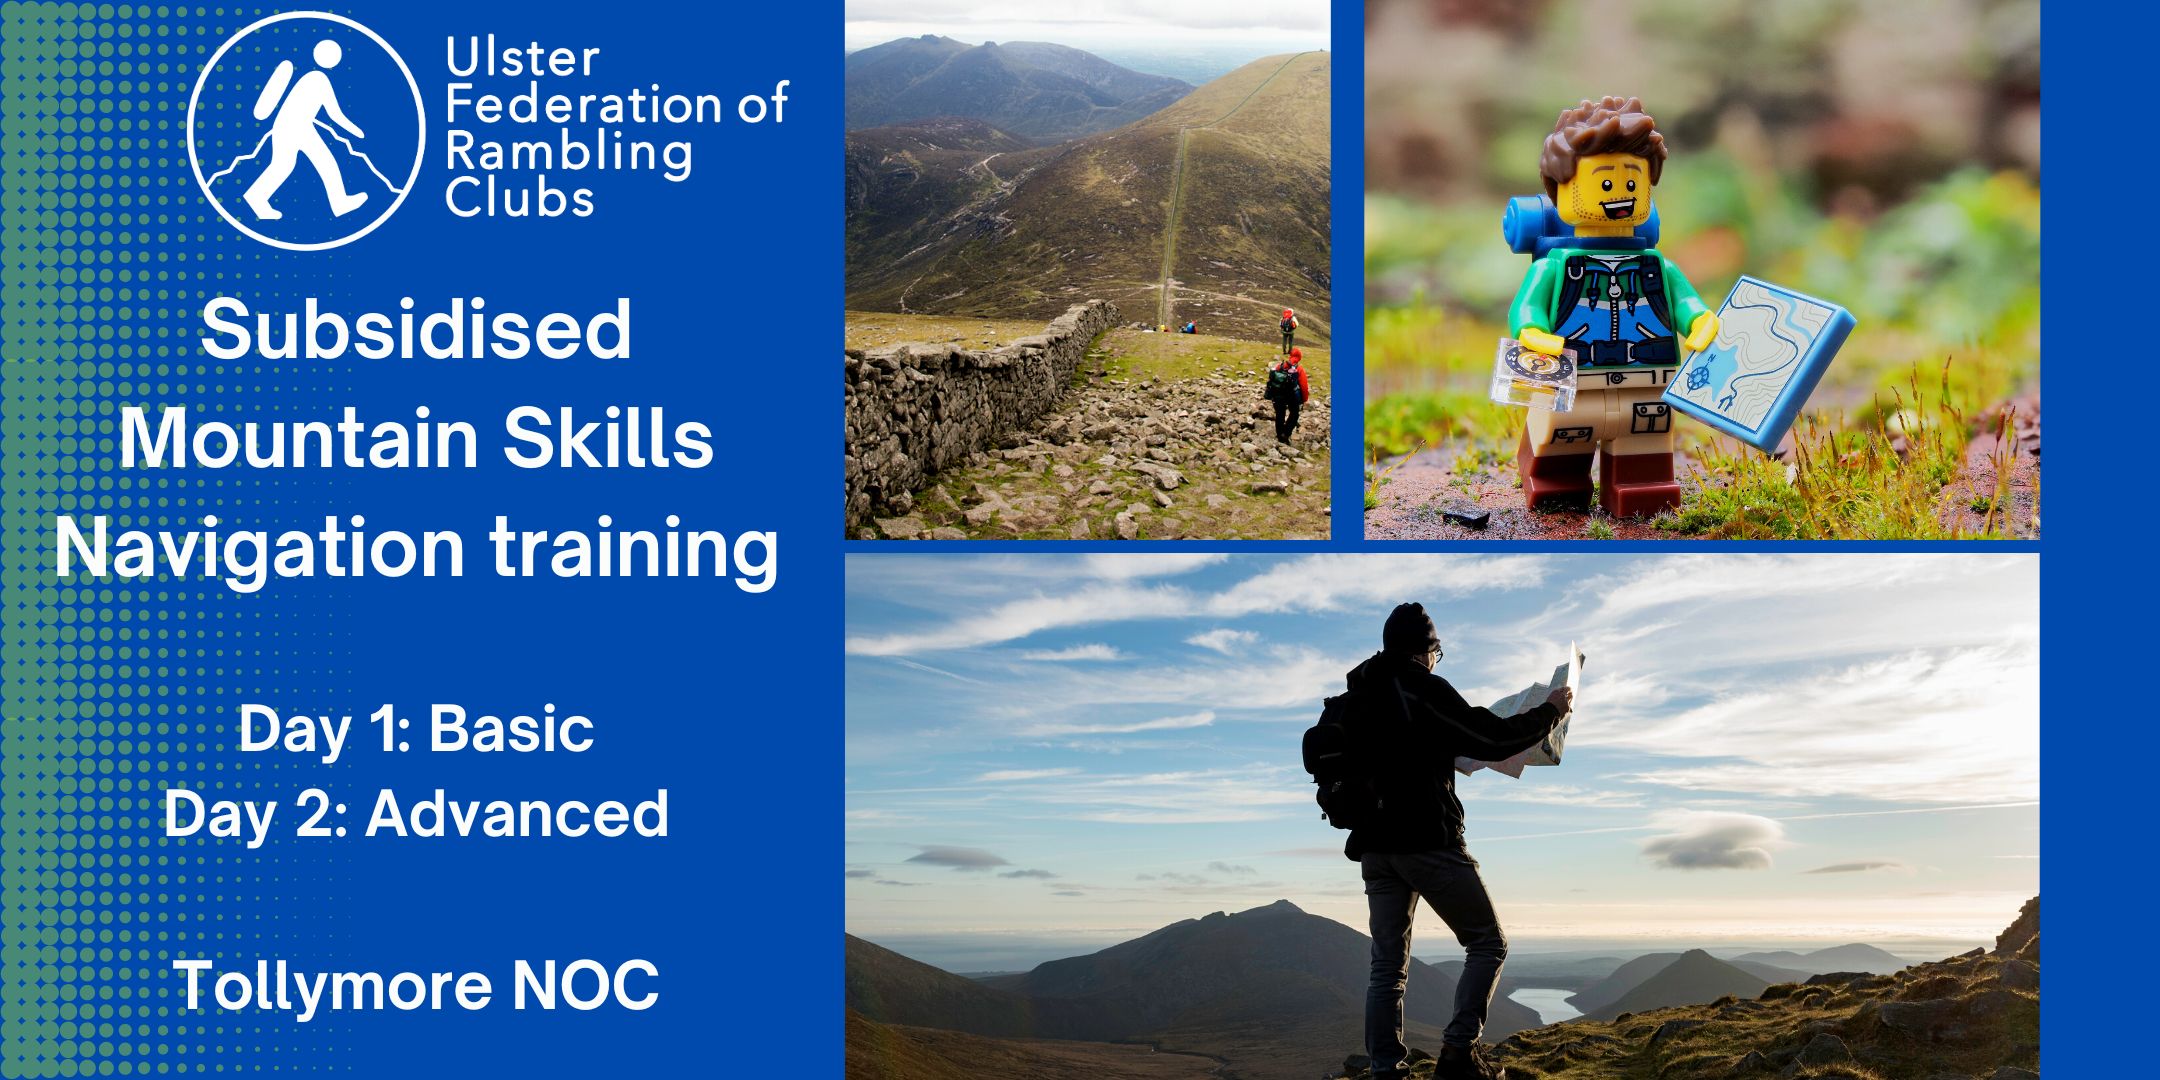 UFRC Subsidised Mountain Skills Navigation Training